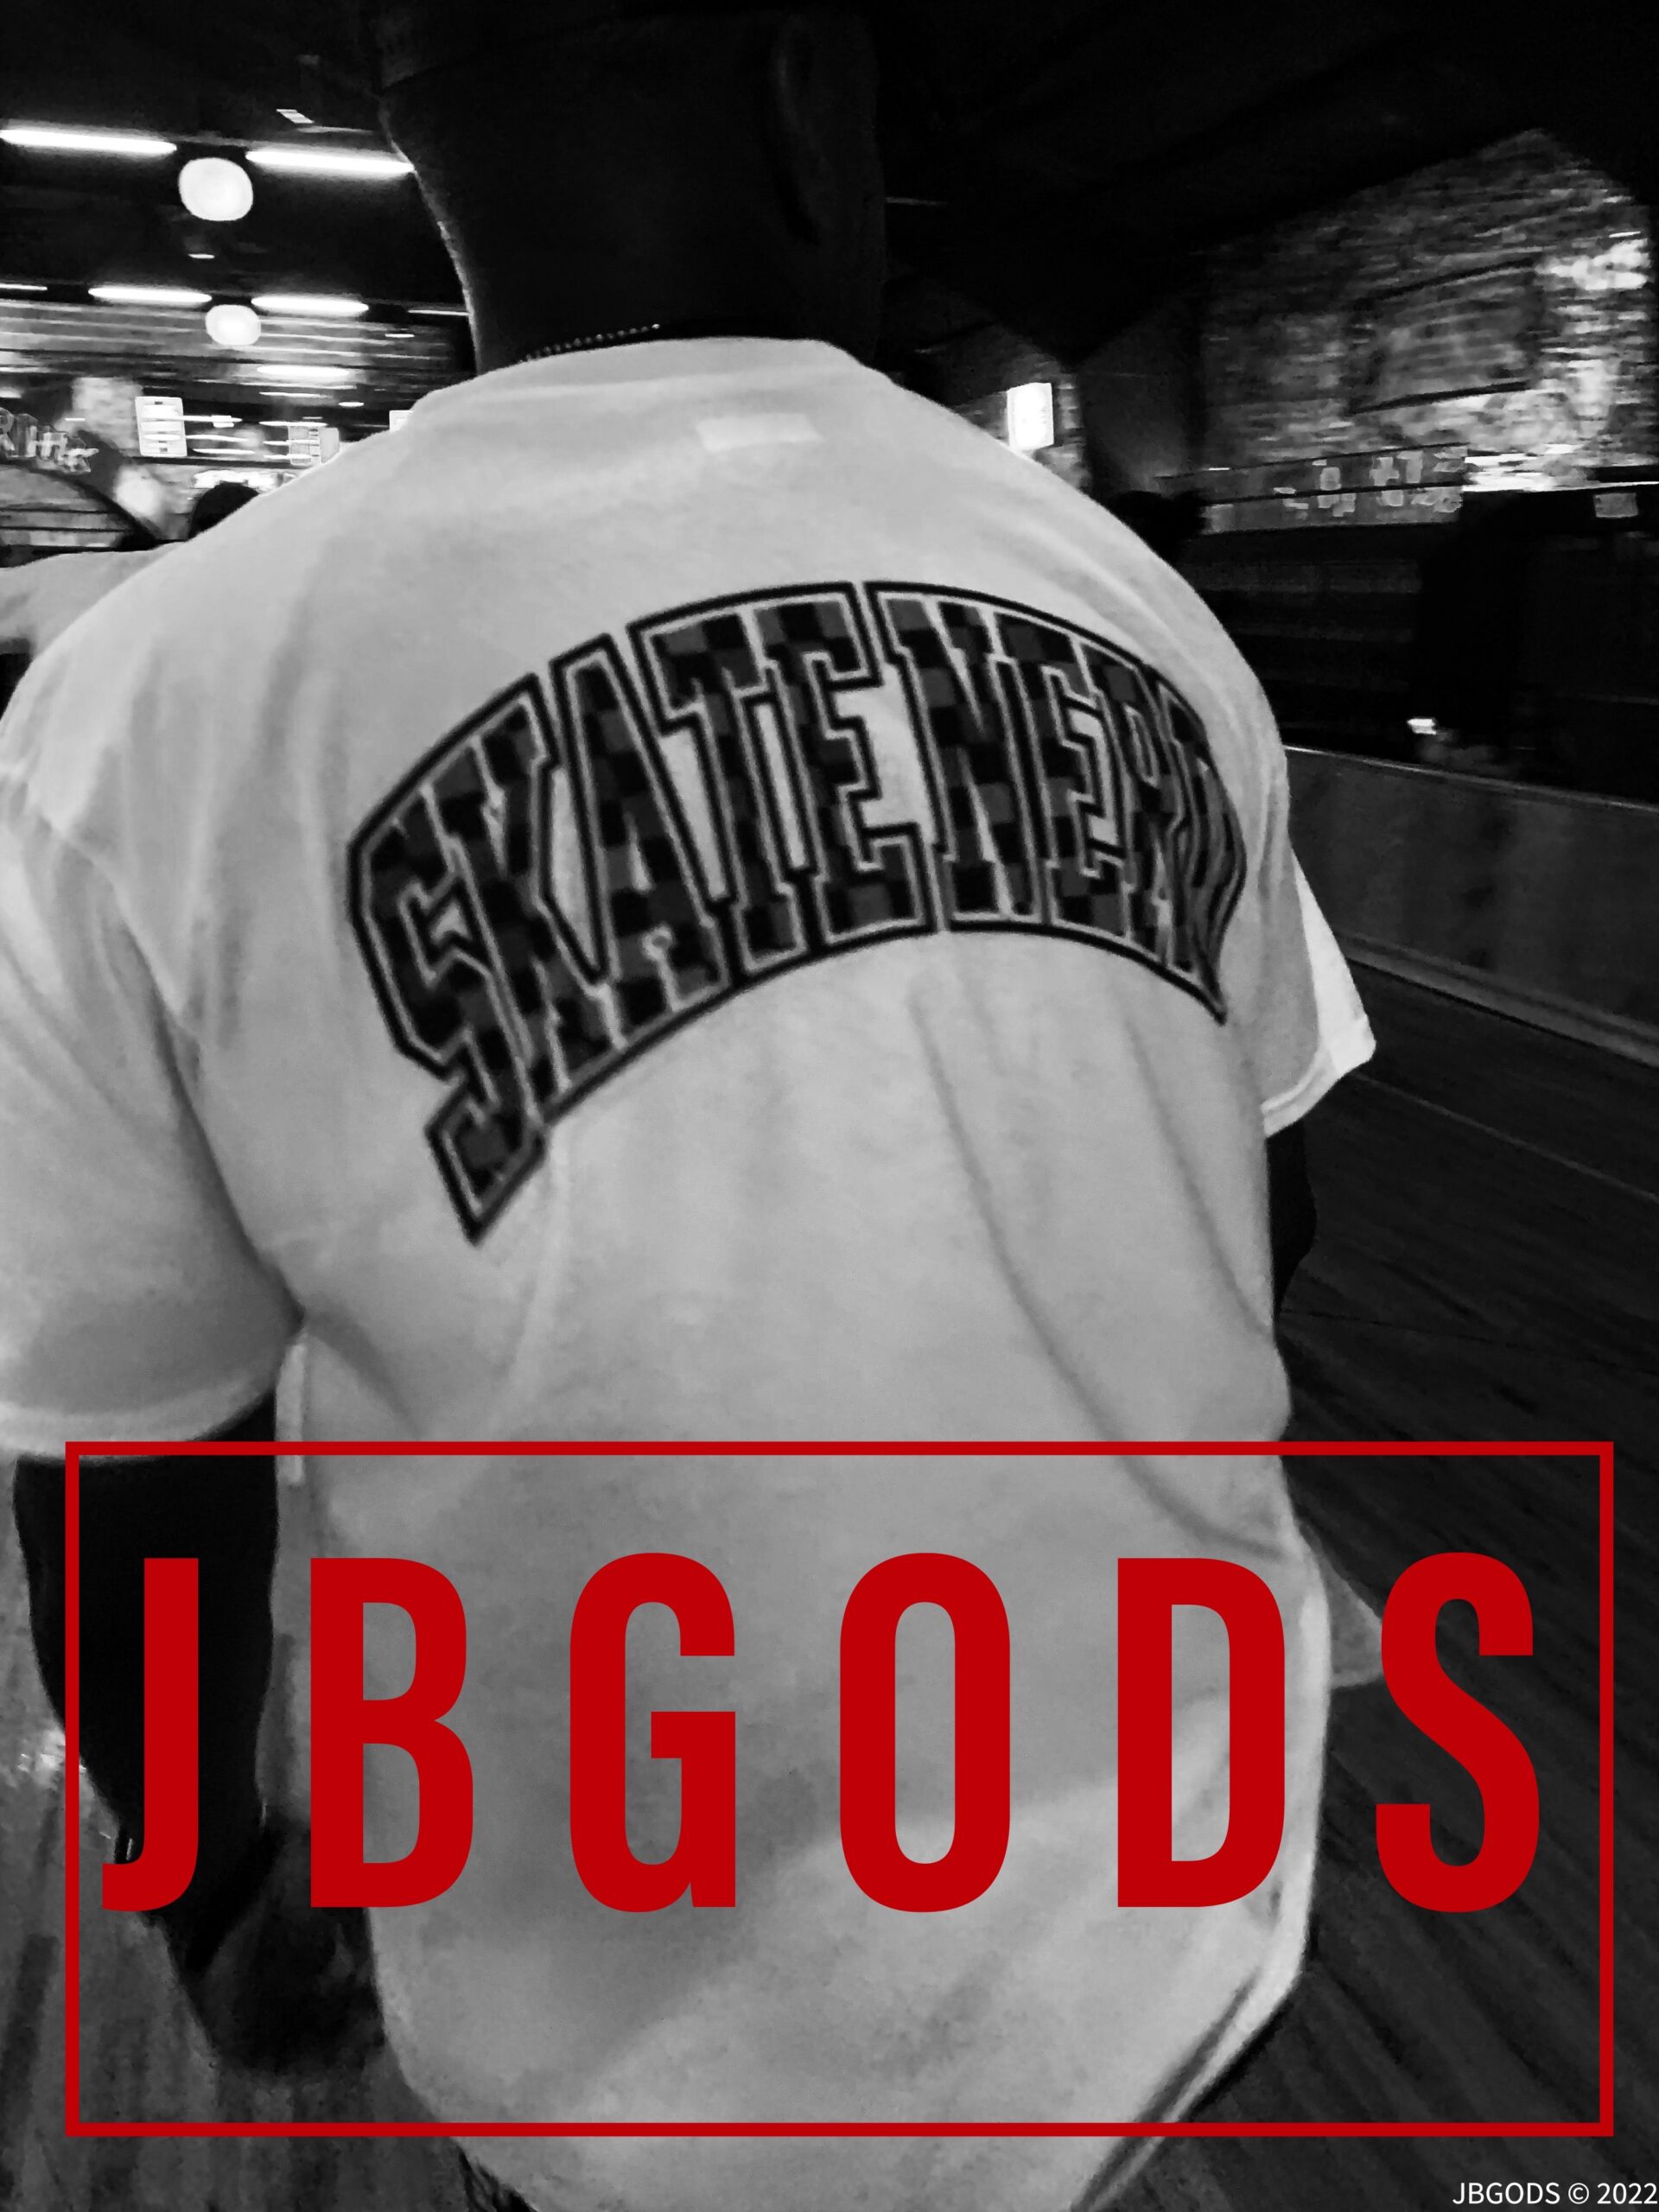 King Eway from SkateNerd clothing on JBGODS